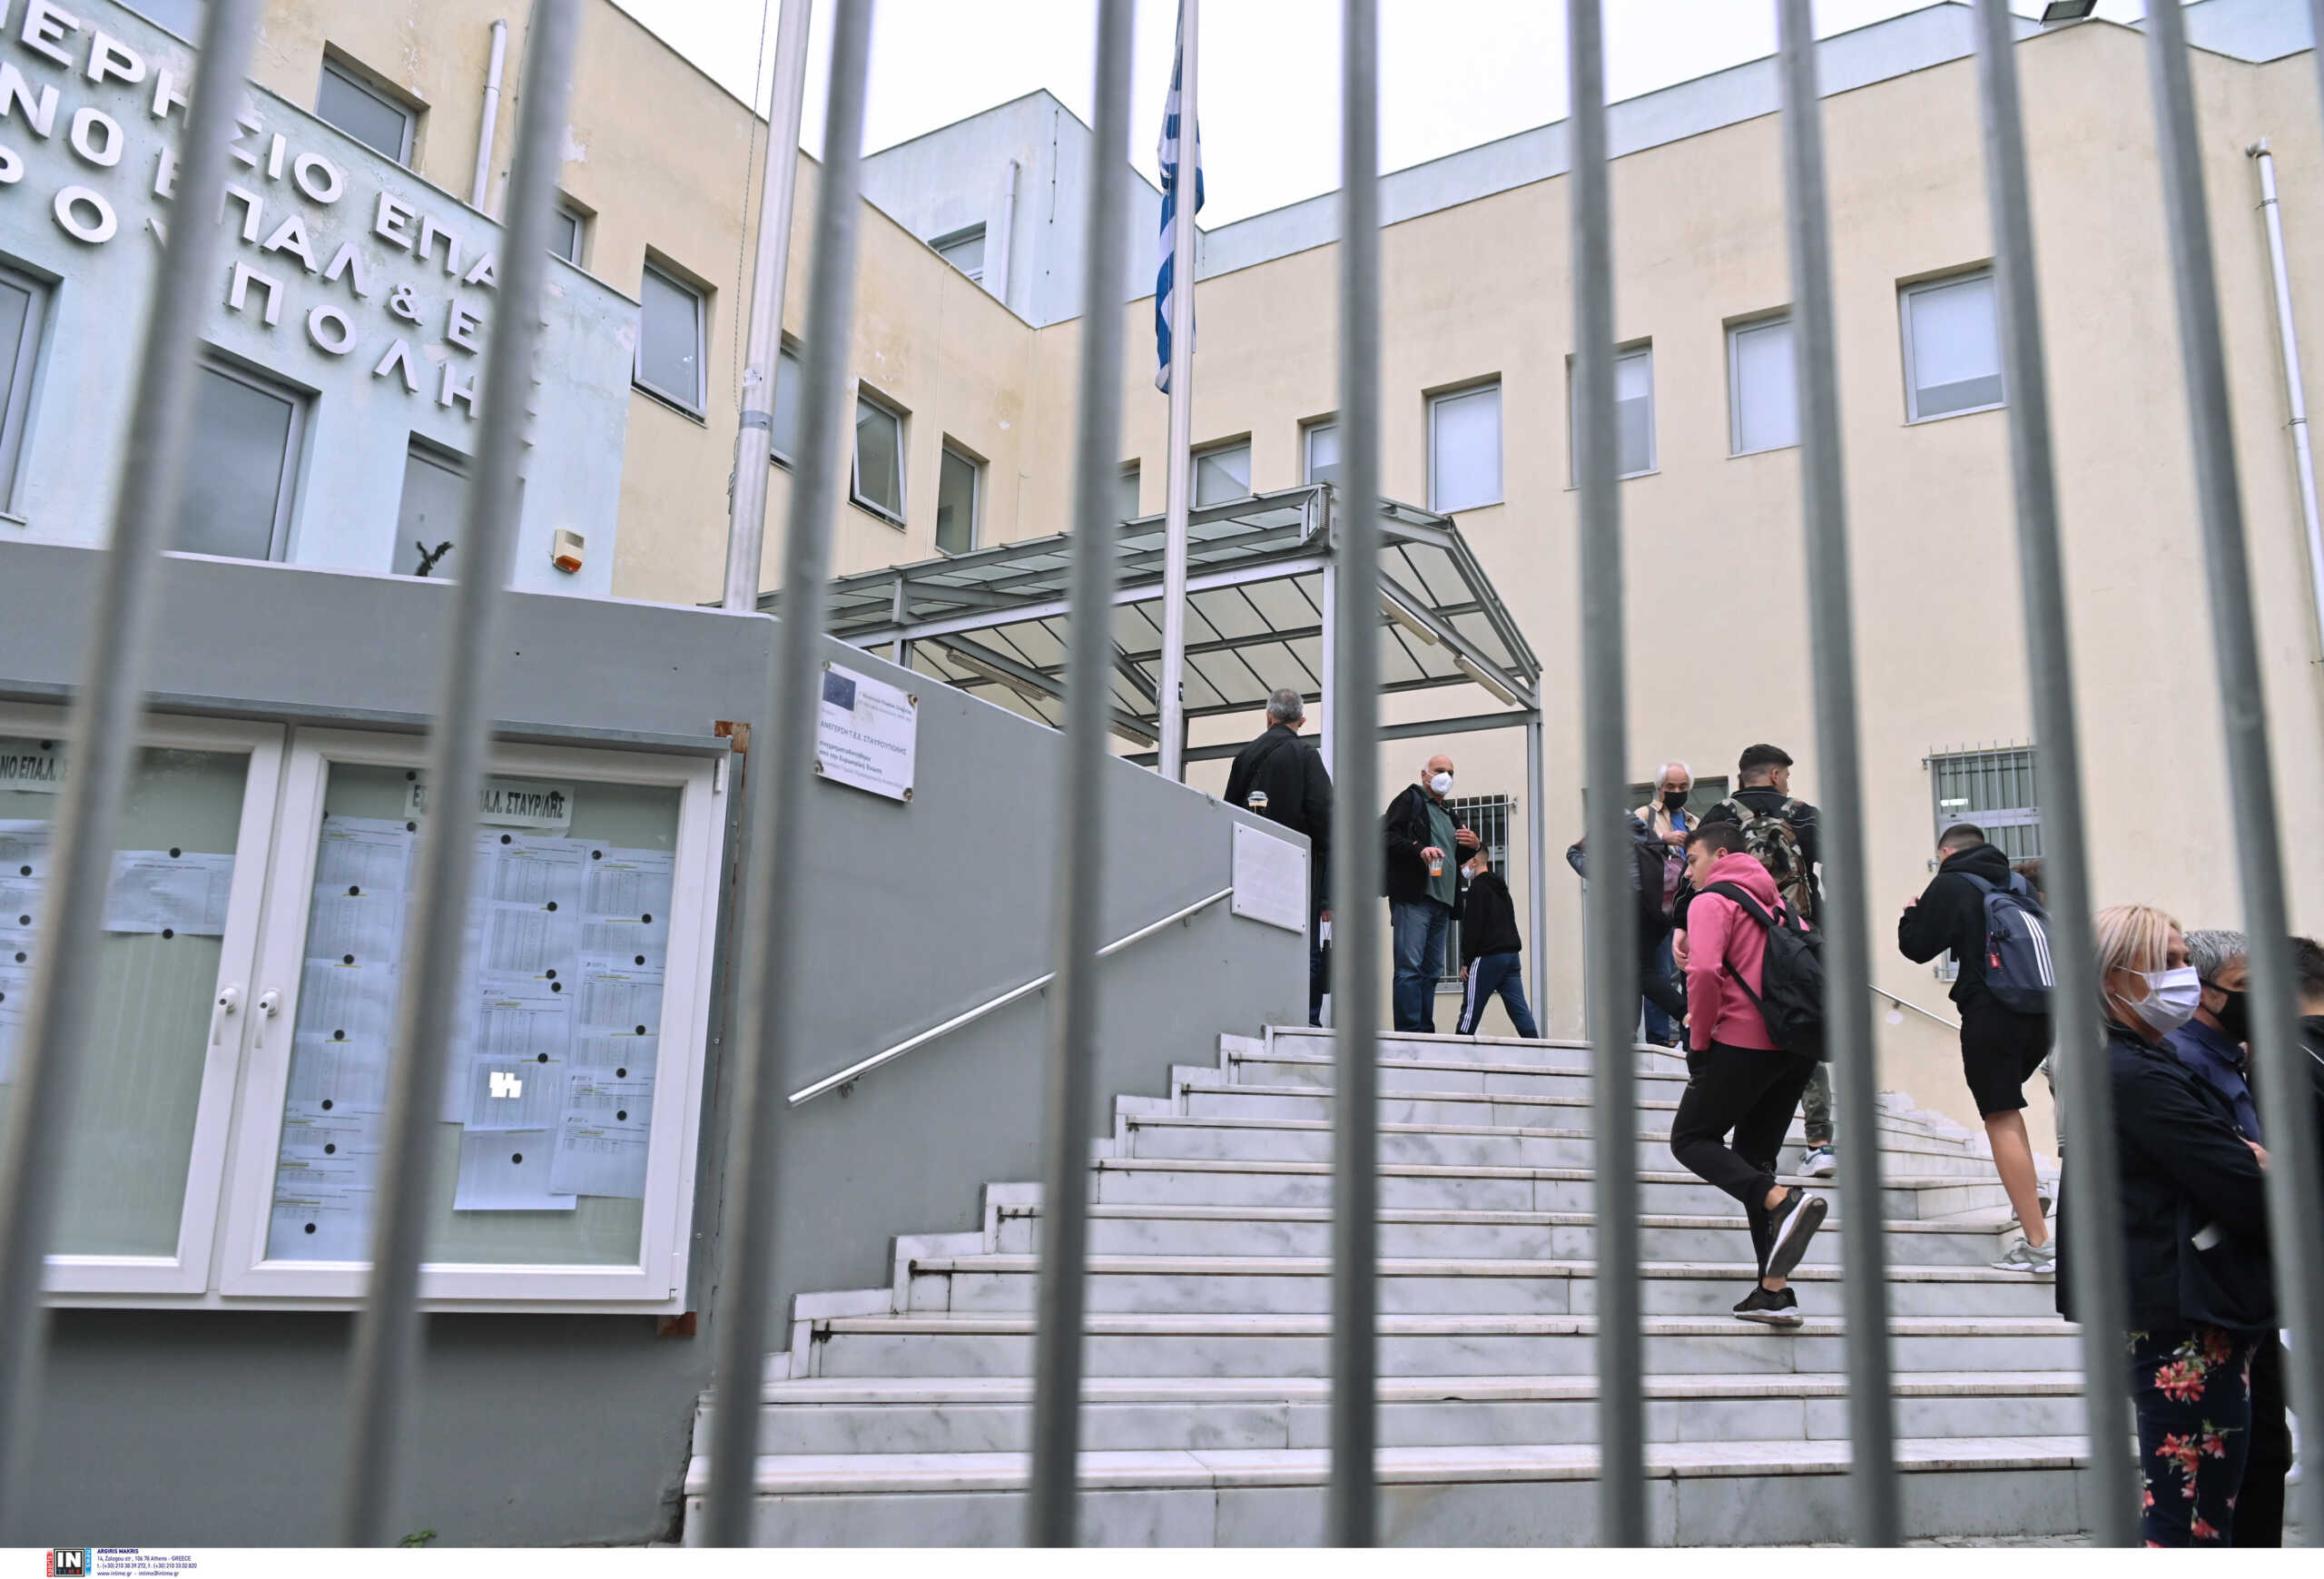 Θεσσαλονίκη: Εκκενώνονται σχολεία μετά από τηλεφώνημα για βόμβα